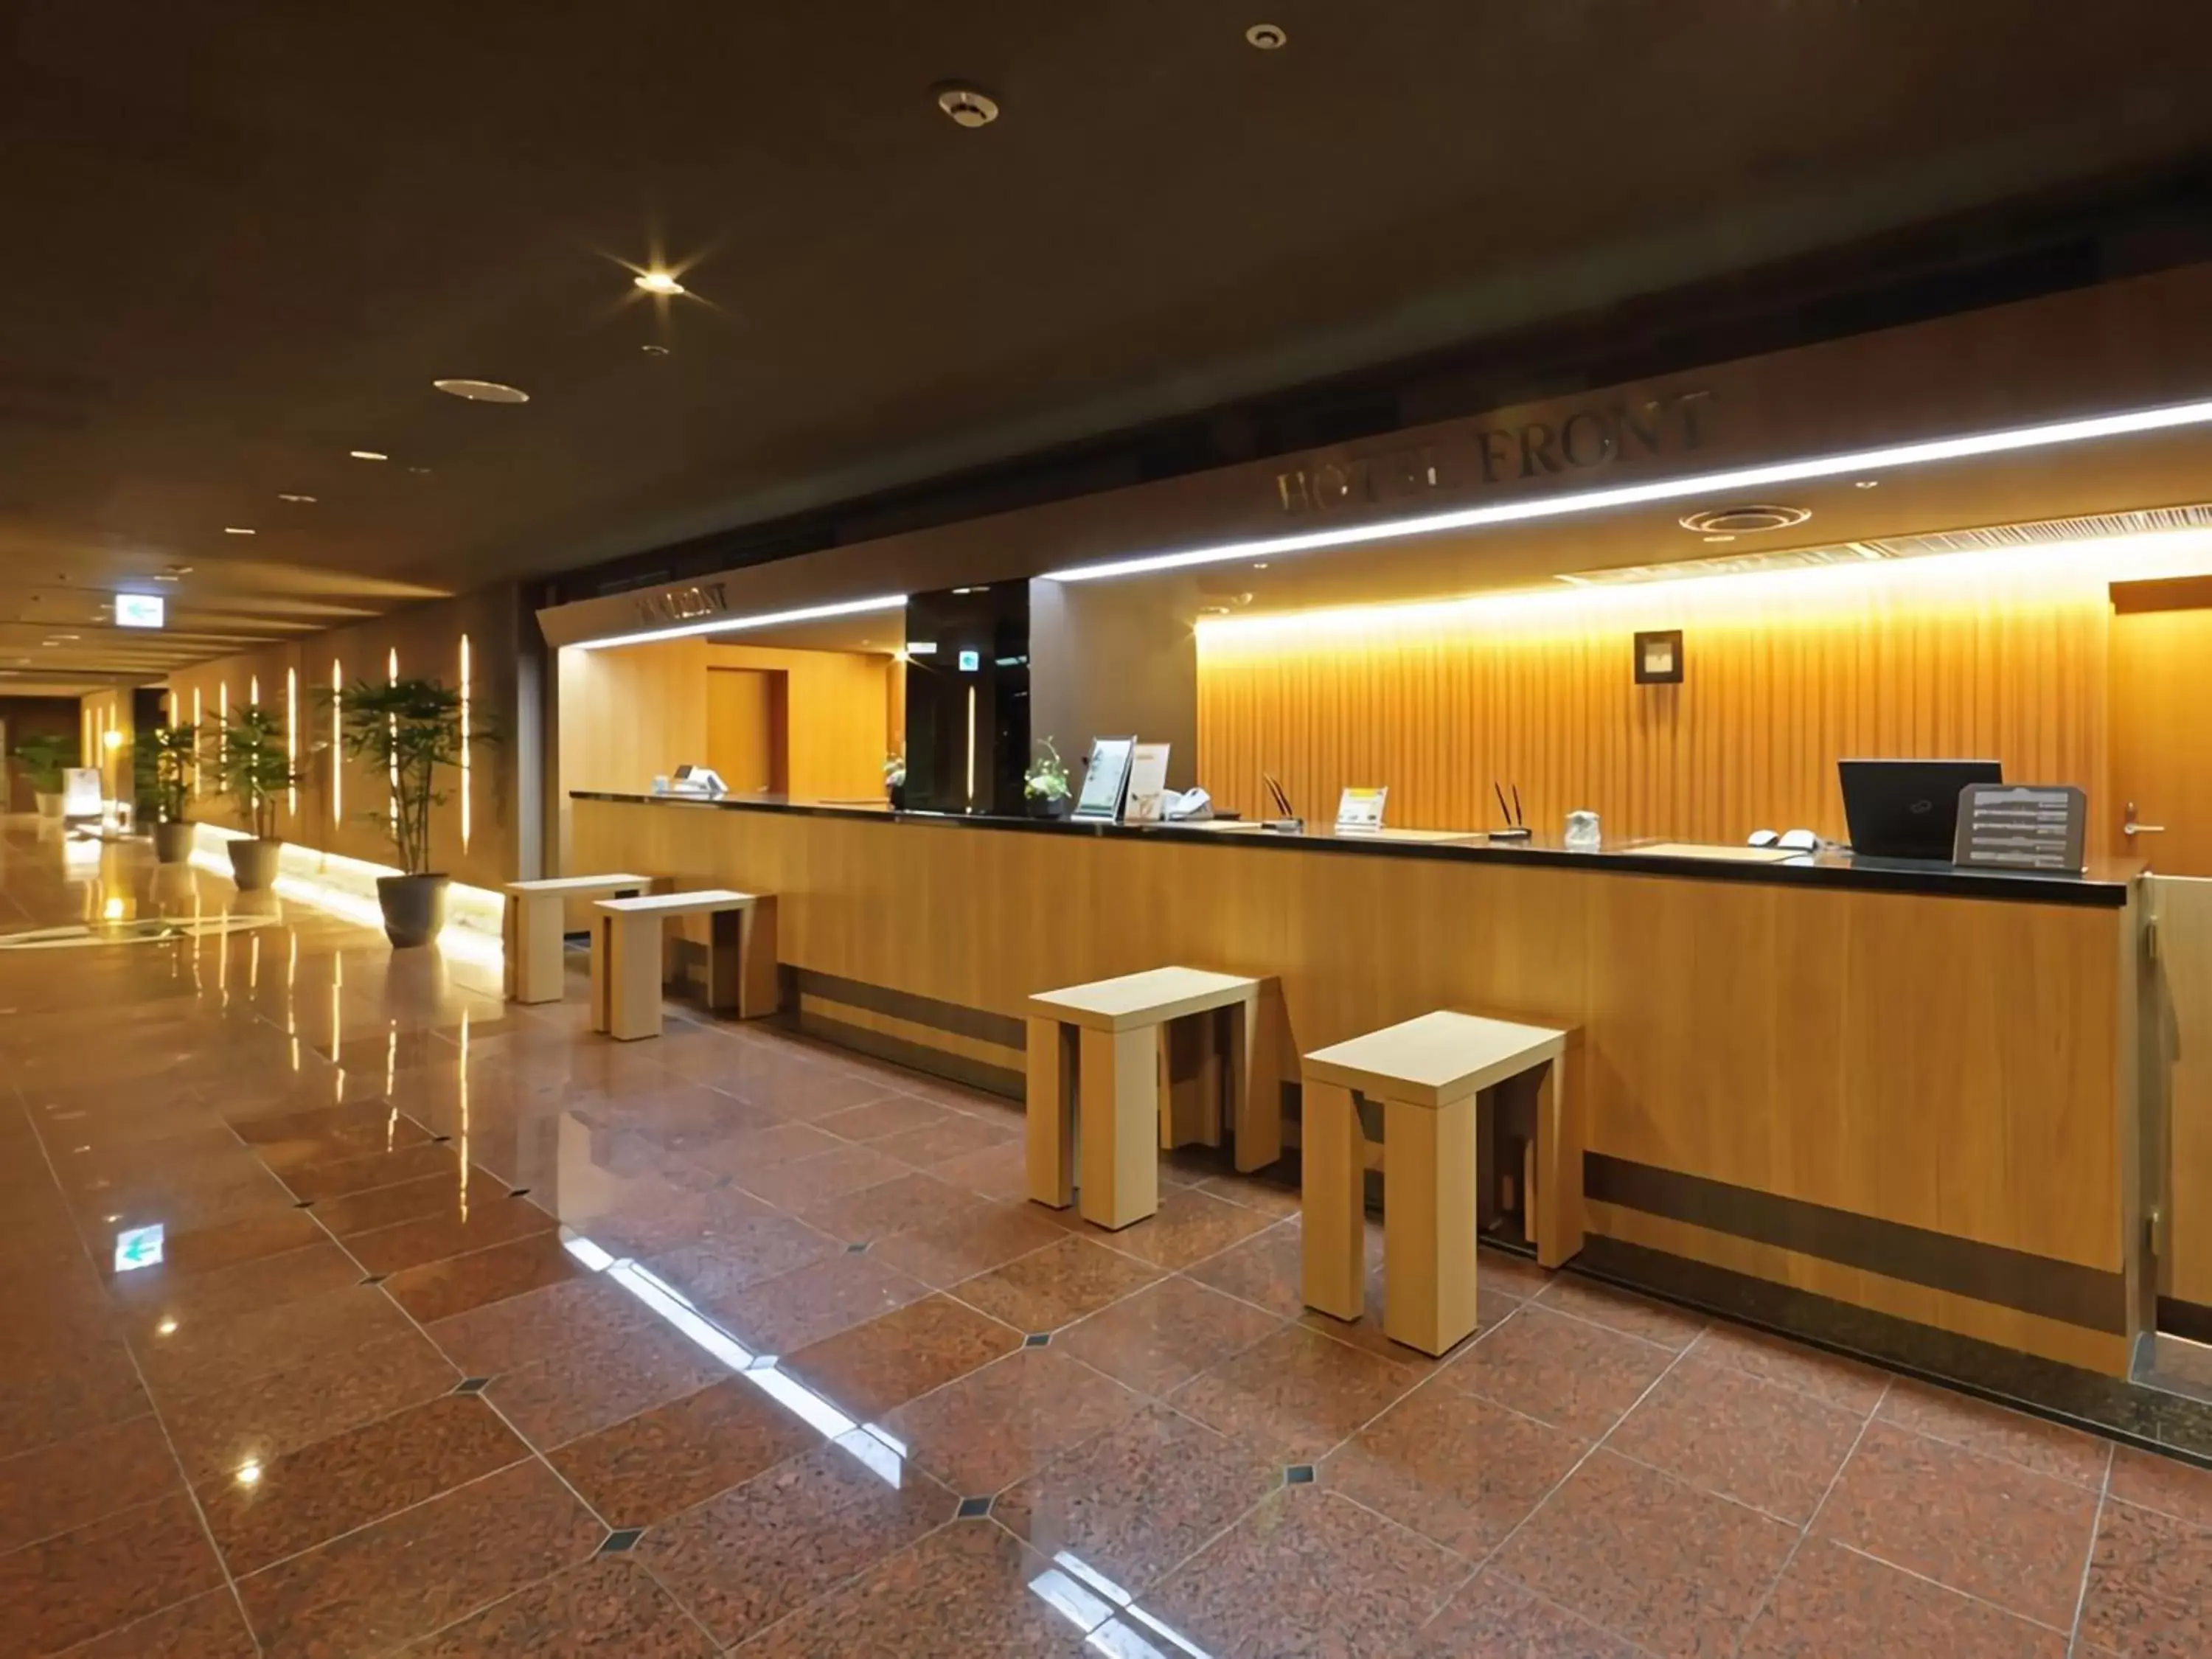 Lobby or reception, Lobby/Reception in Himeji Castle Grandvrio Hotel